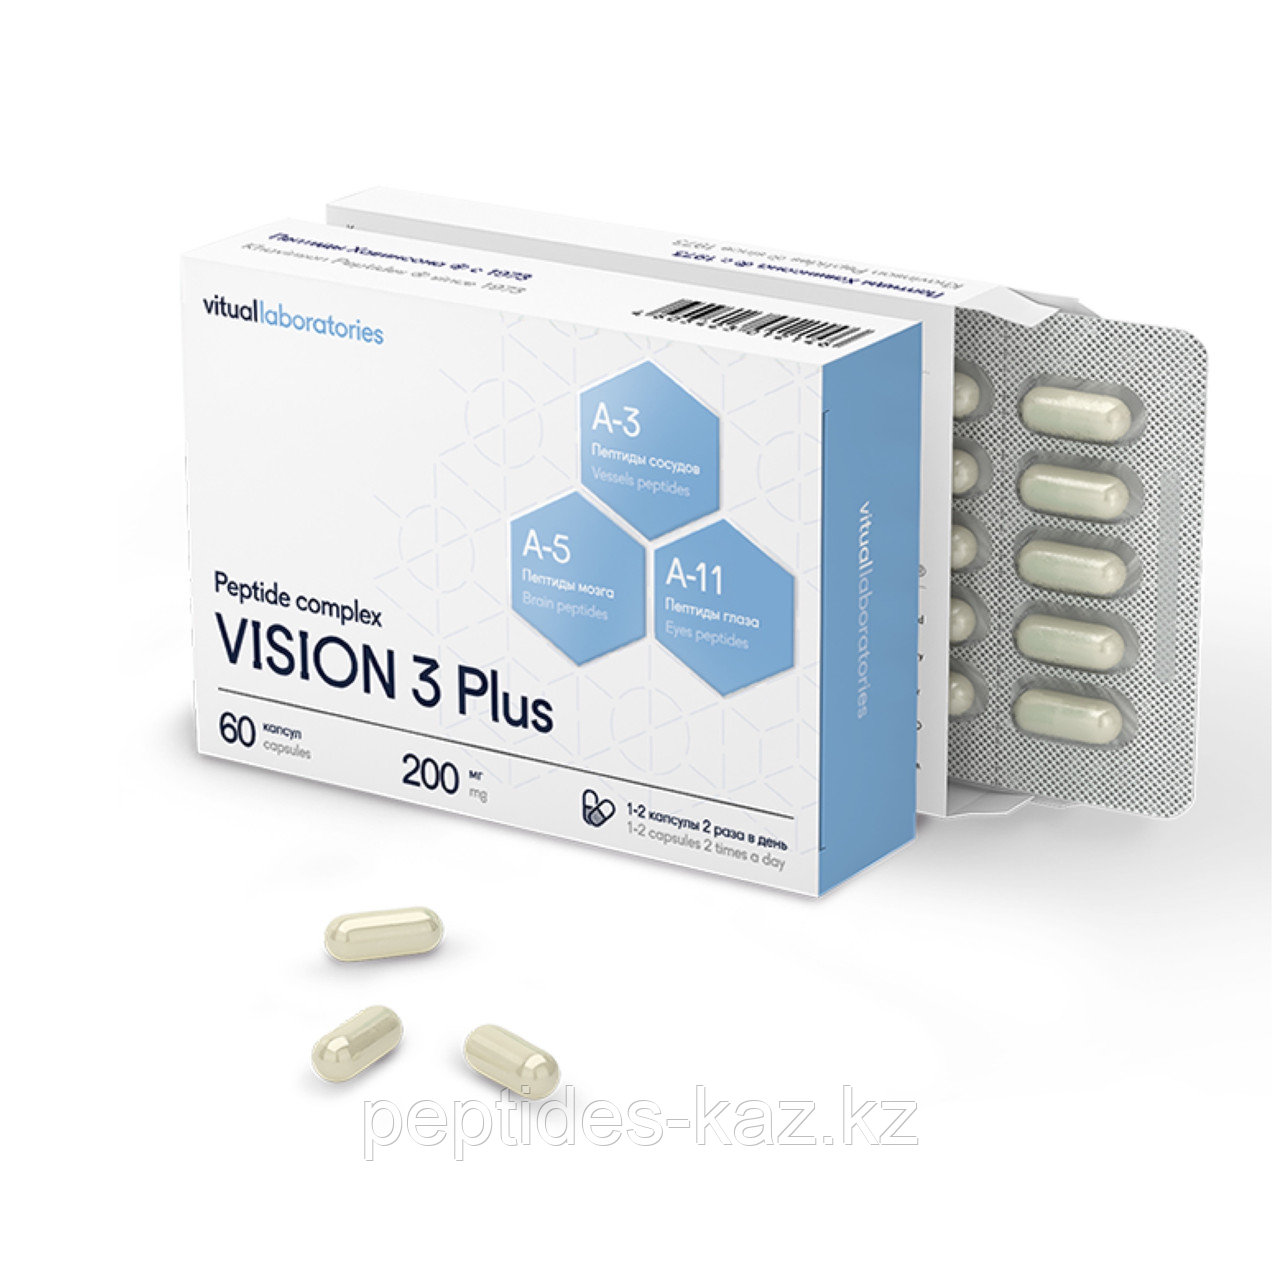 VISION 3 Plus® №60, хорошее зрение и здоровье глаз